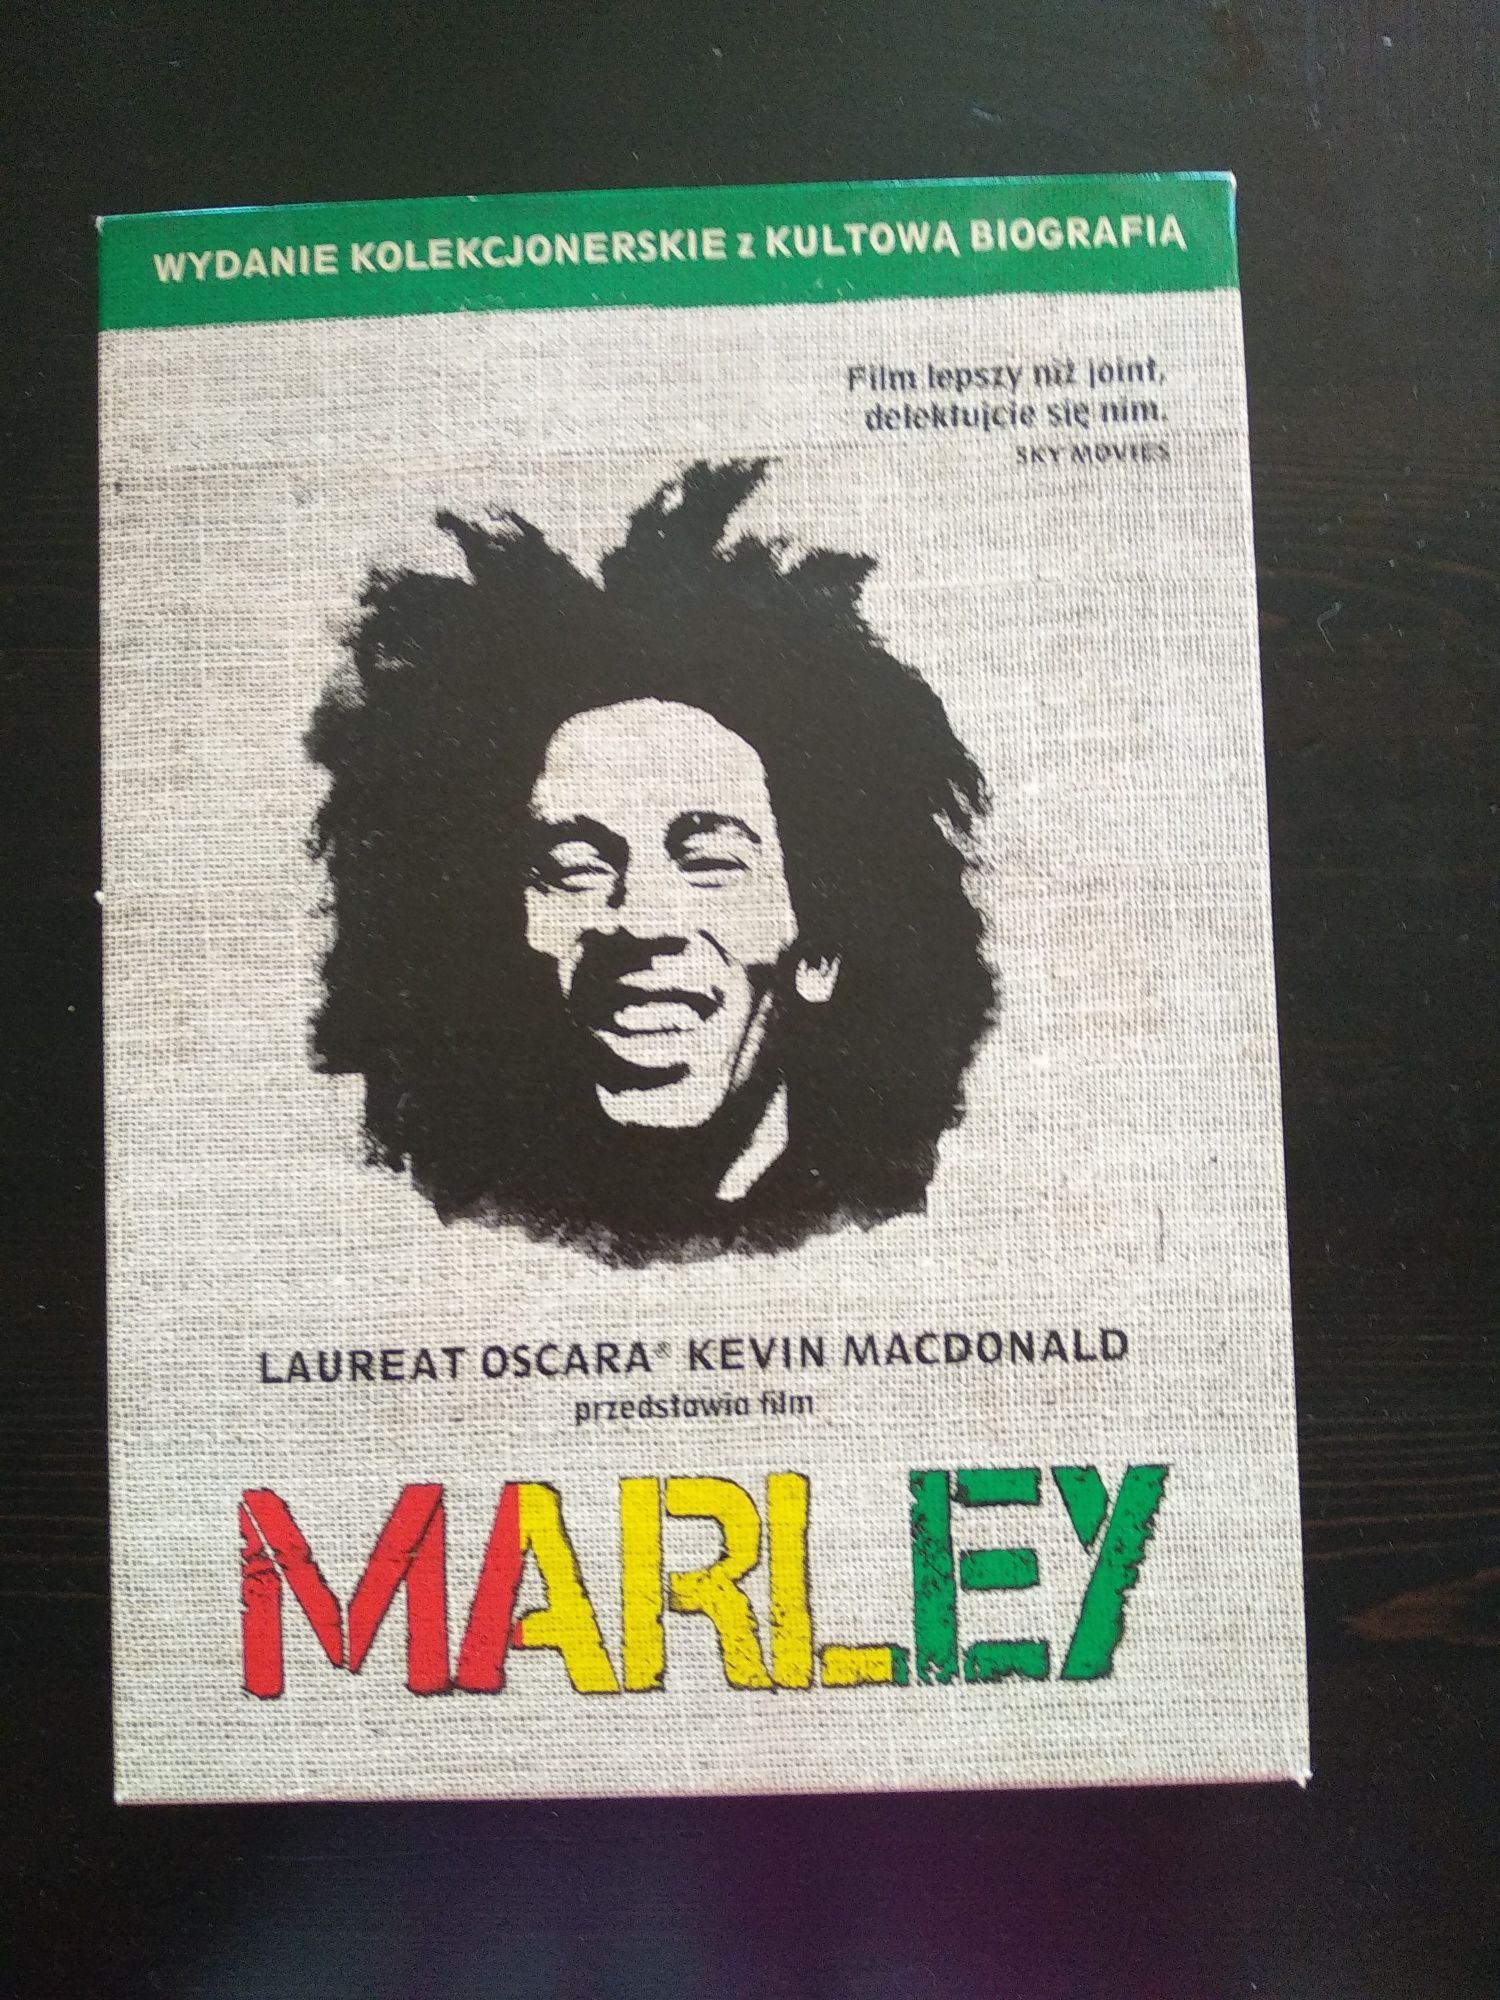 Marley film i książka kultowa biografia wydanie kolekcjonerskie